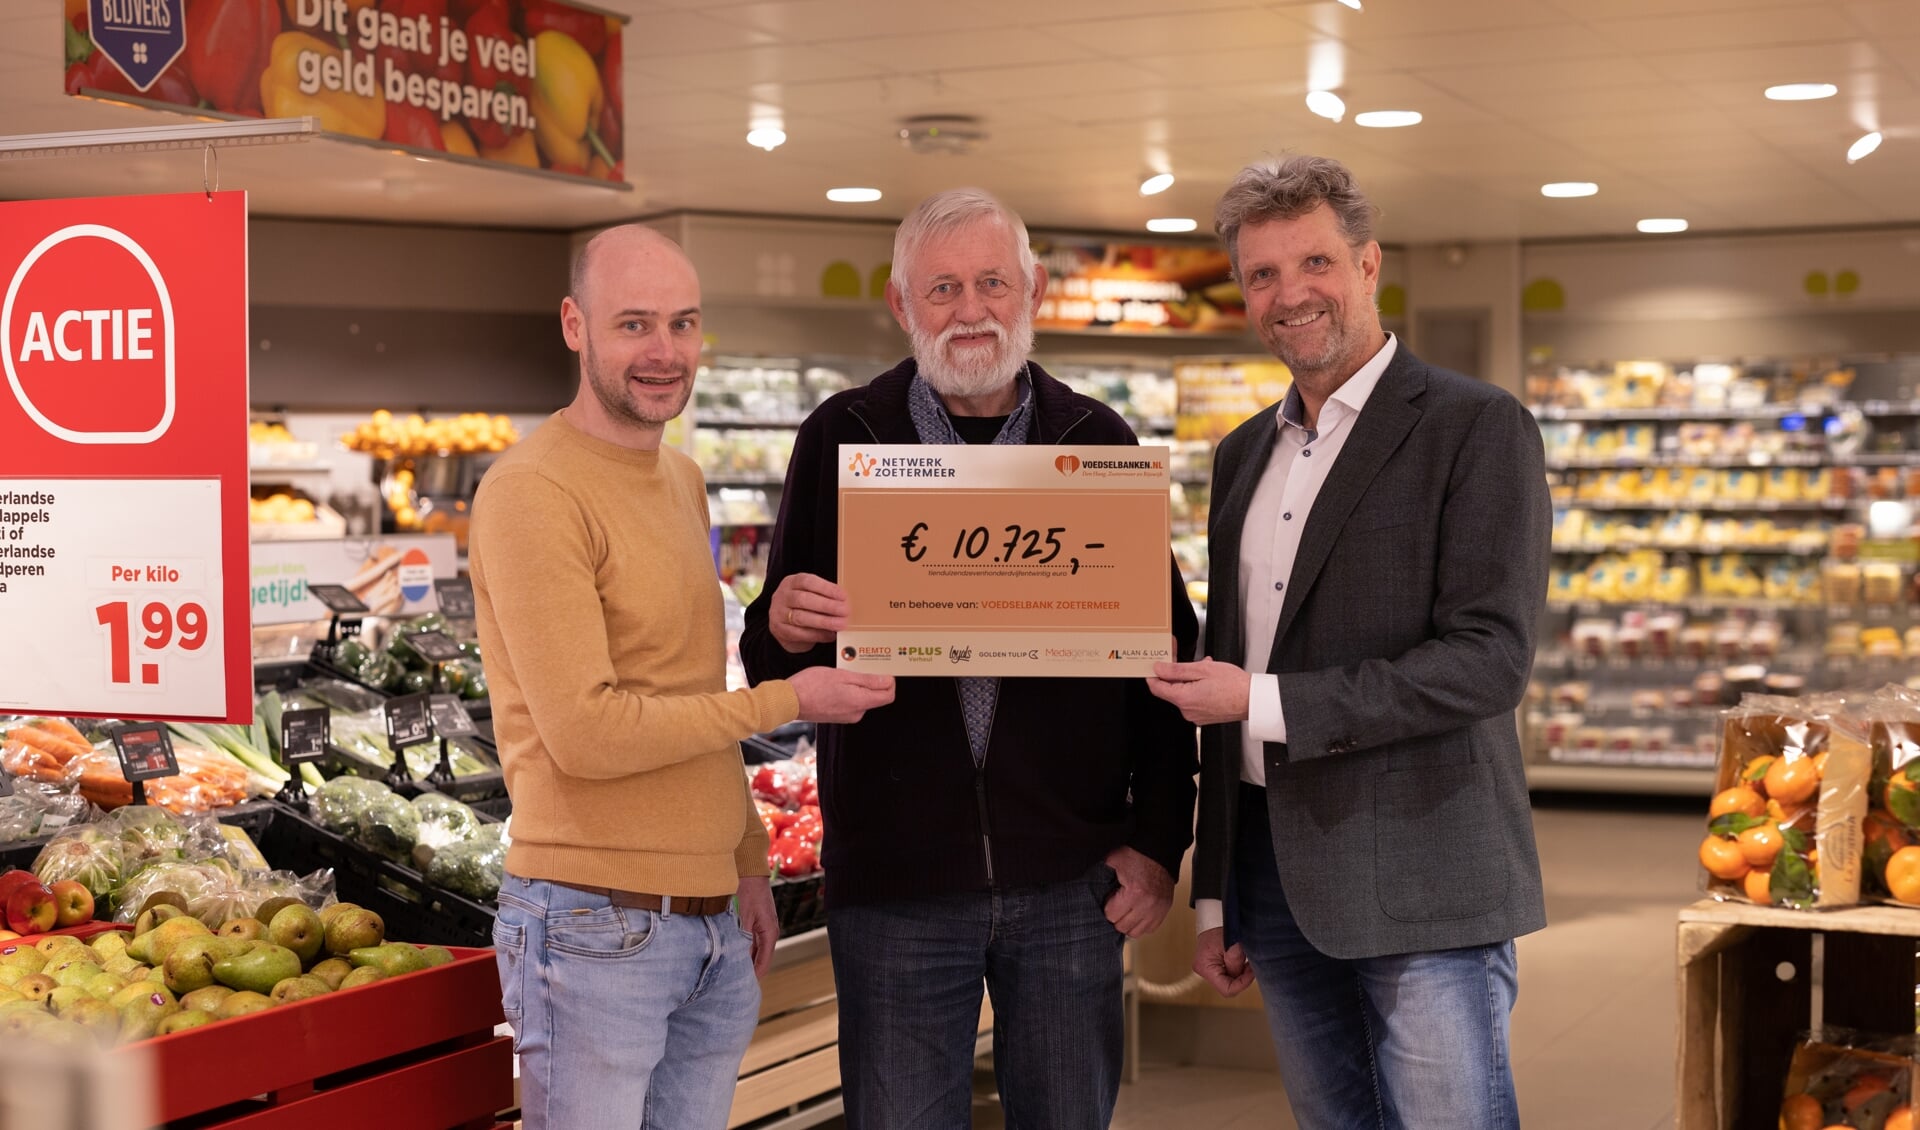 De cheque is door Ruud Steggerda en Adriaan Verheul uitgereikt aan de Voedselbank. Foto: Caroline Winter